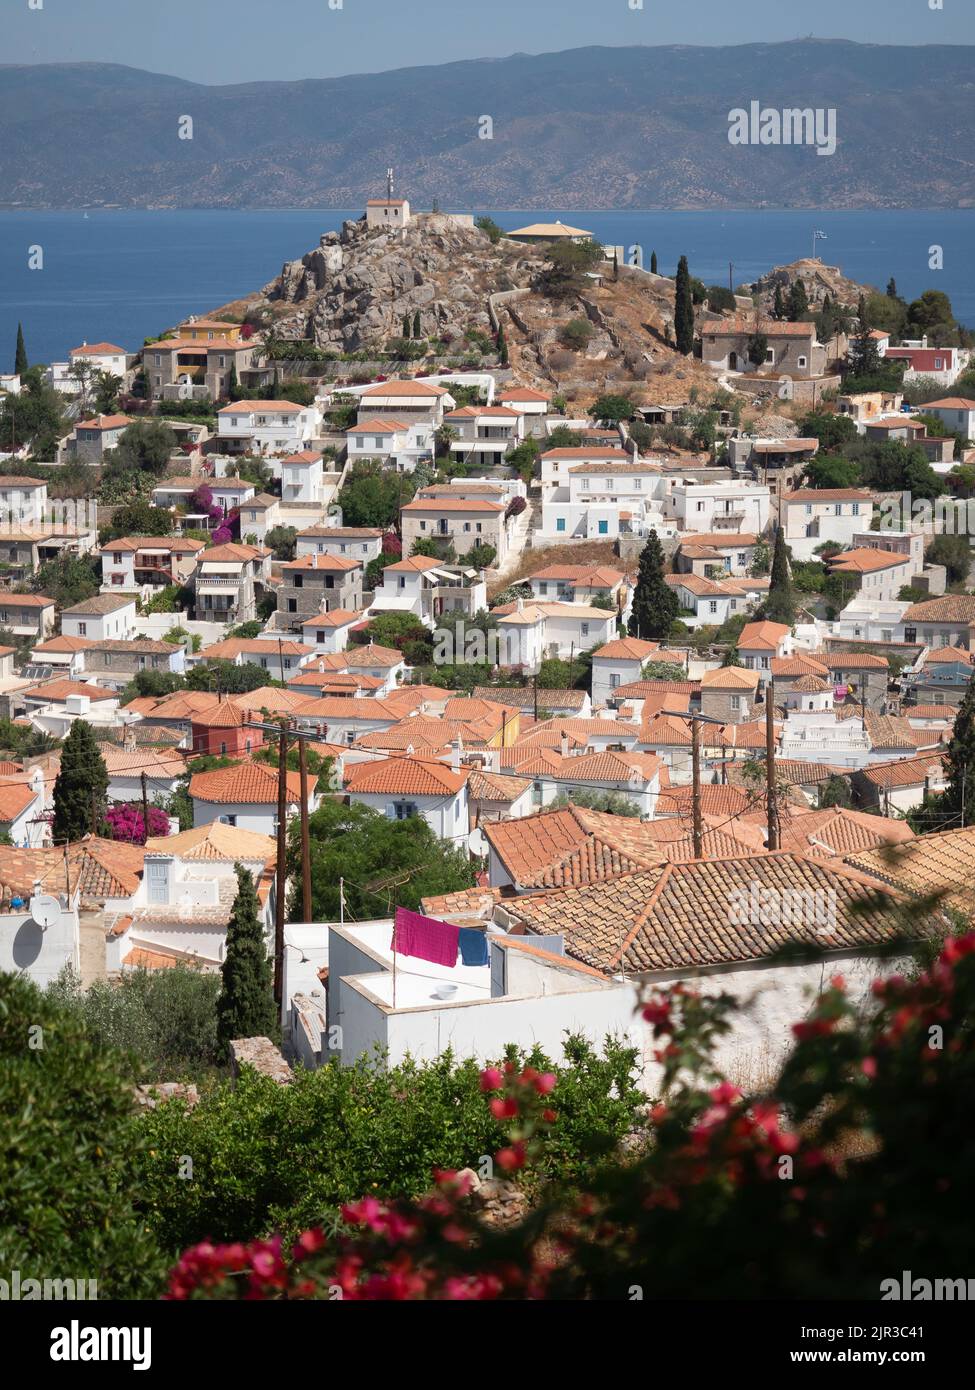 Vista sull'isola di Idra, vista sul mare, sui tetti in terracotta e sui fiori rosa Foto Stock